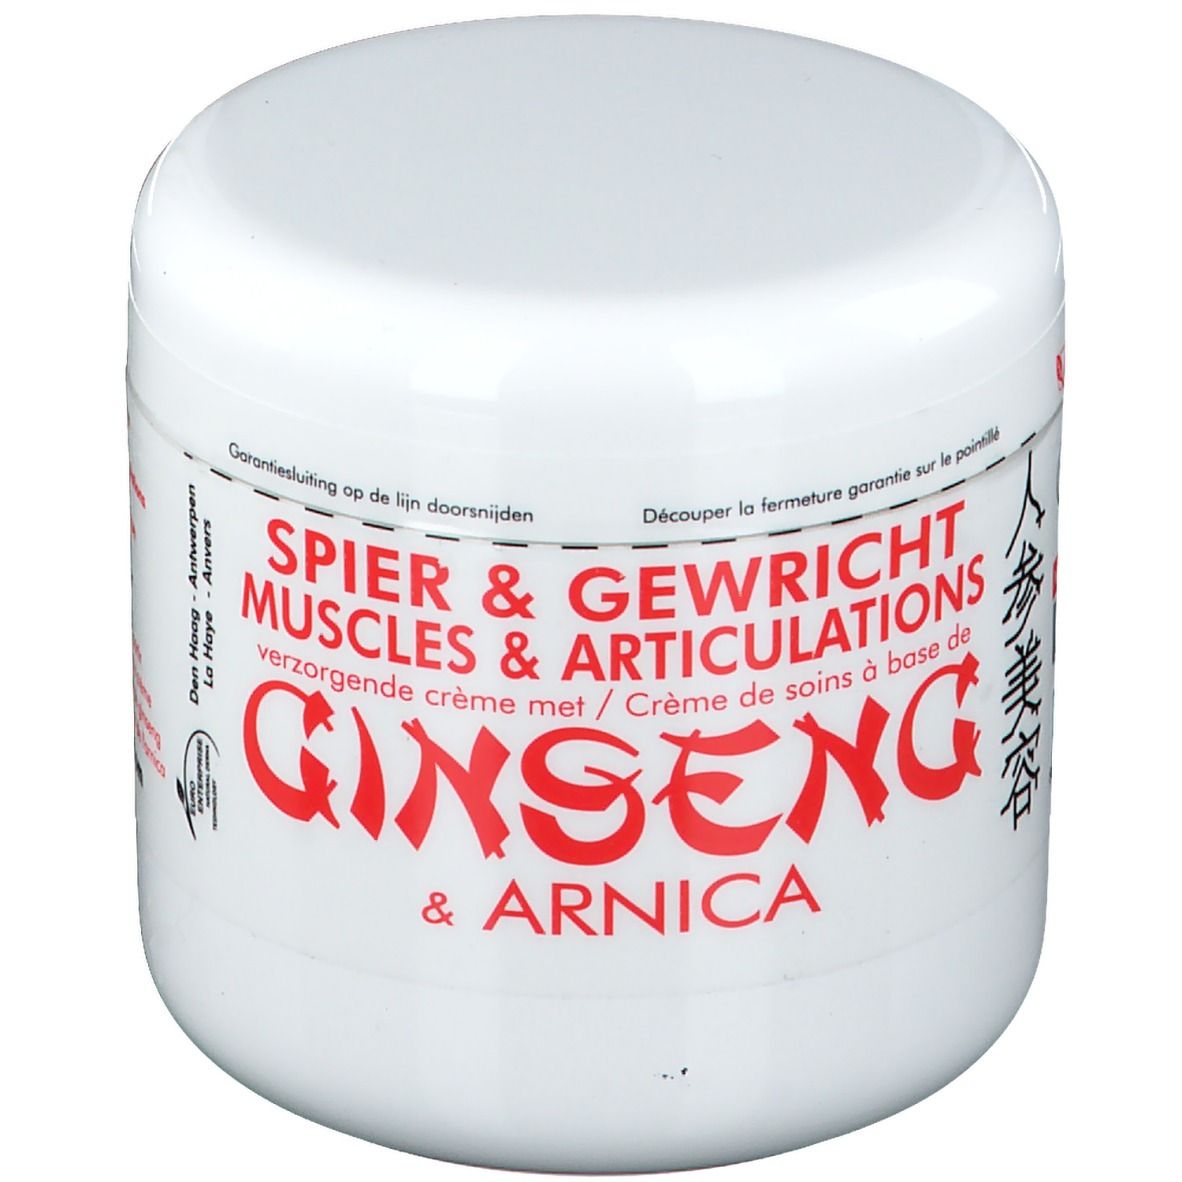 Ginseng Creams® Muscles et articulations crème de soins à base de ginseng et arnica